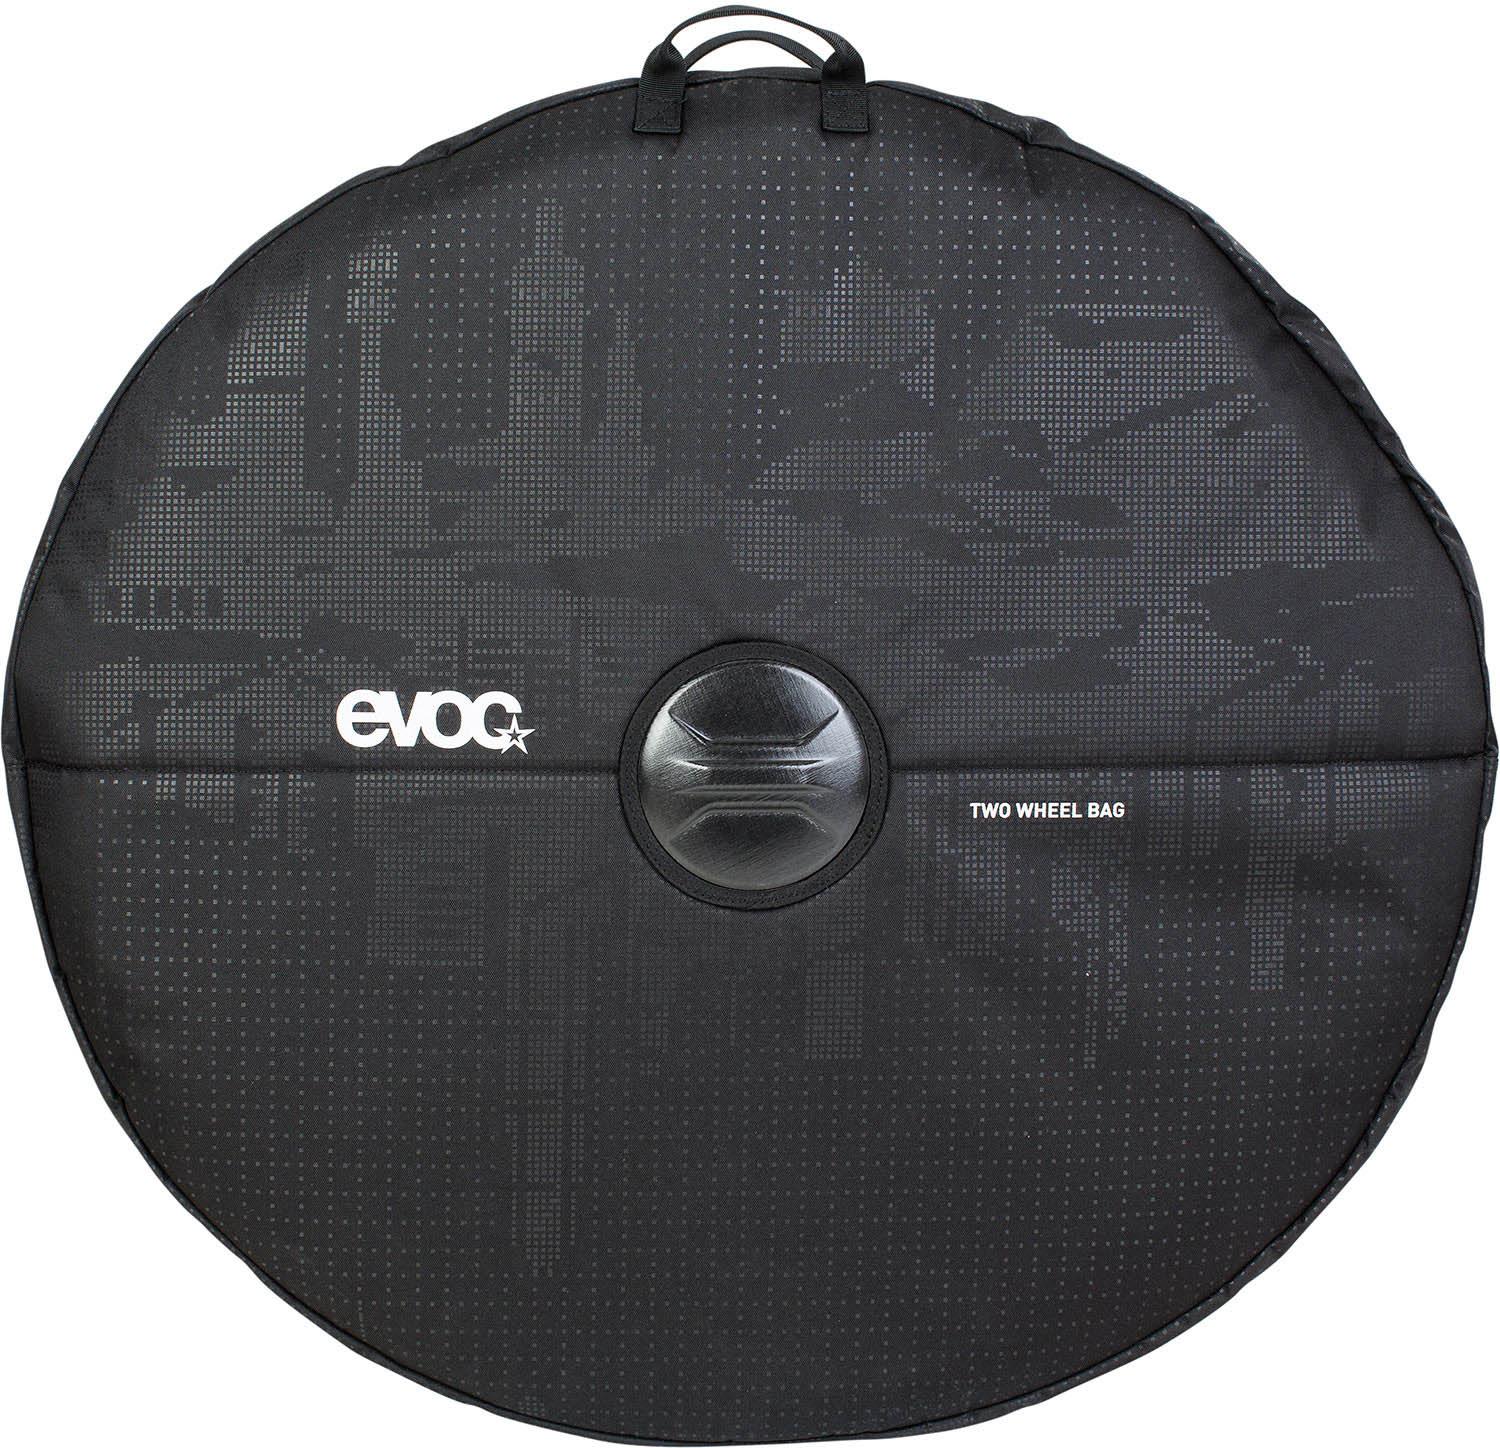 Evoc Two Wheel Bag - Black